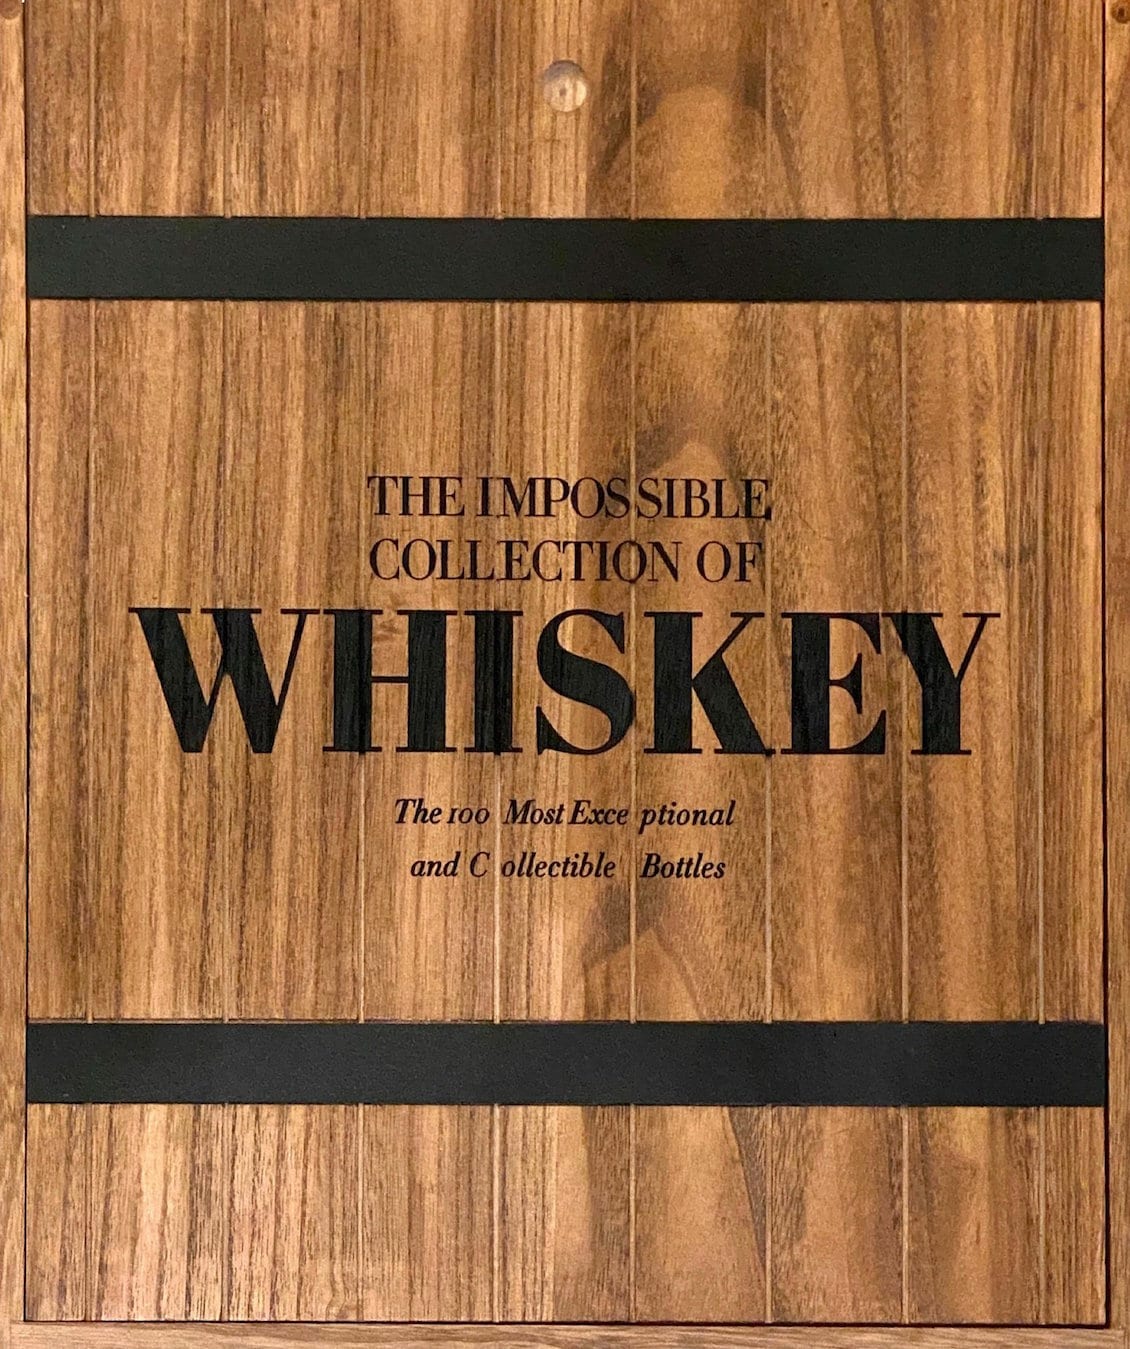 Assouline den umulige samling af whisky